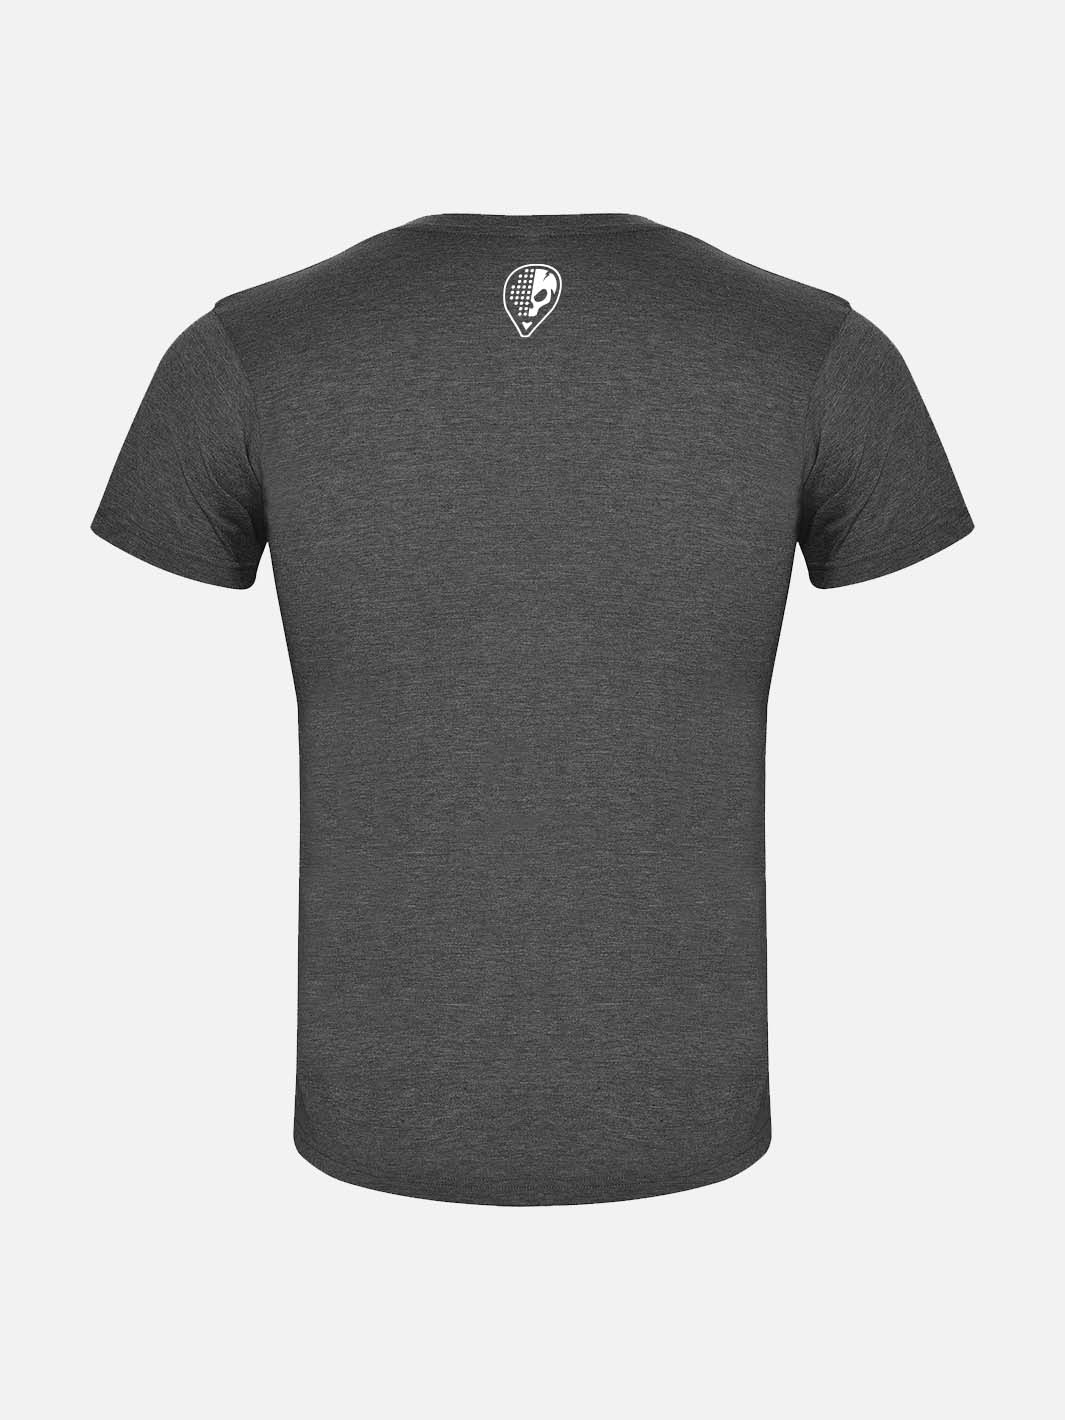 Juan T-shirt - Anthracite Grey